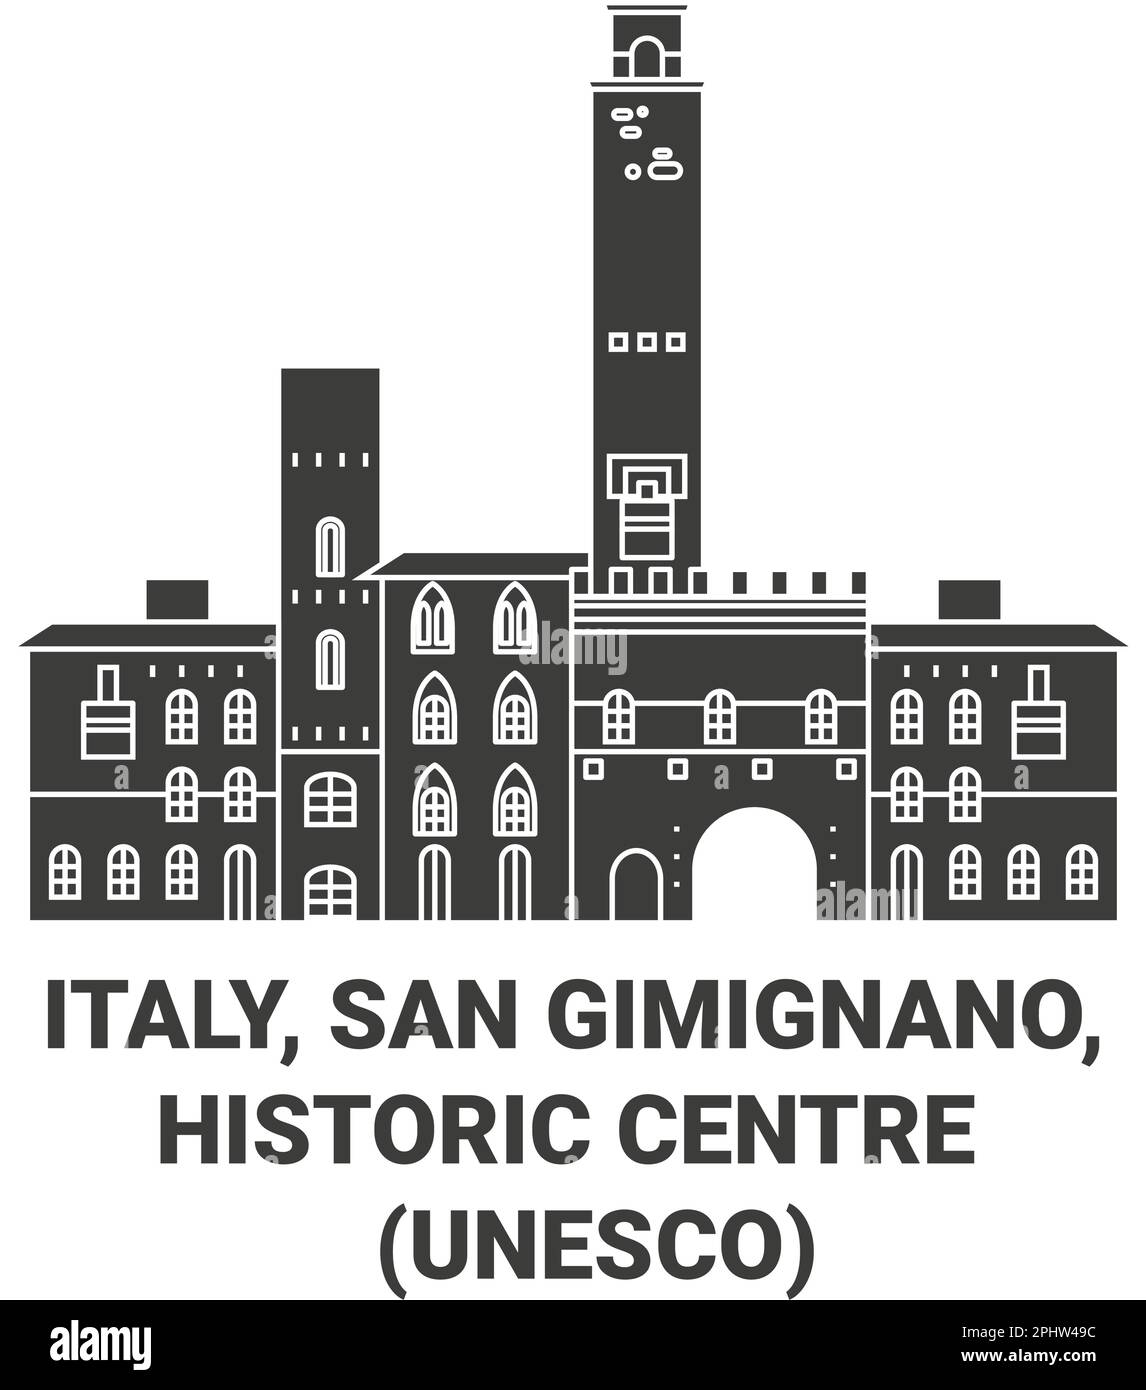 Italien, San Gimignano, historisches Zentrum, UNESCO-Wahrzeichen, Vektordarstellung Stock Vektor